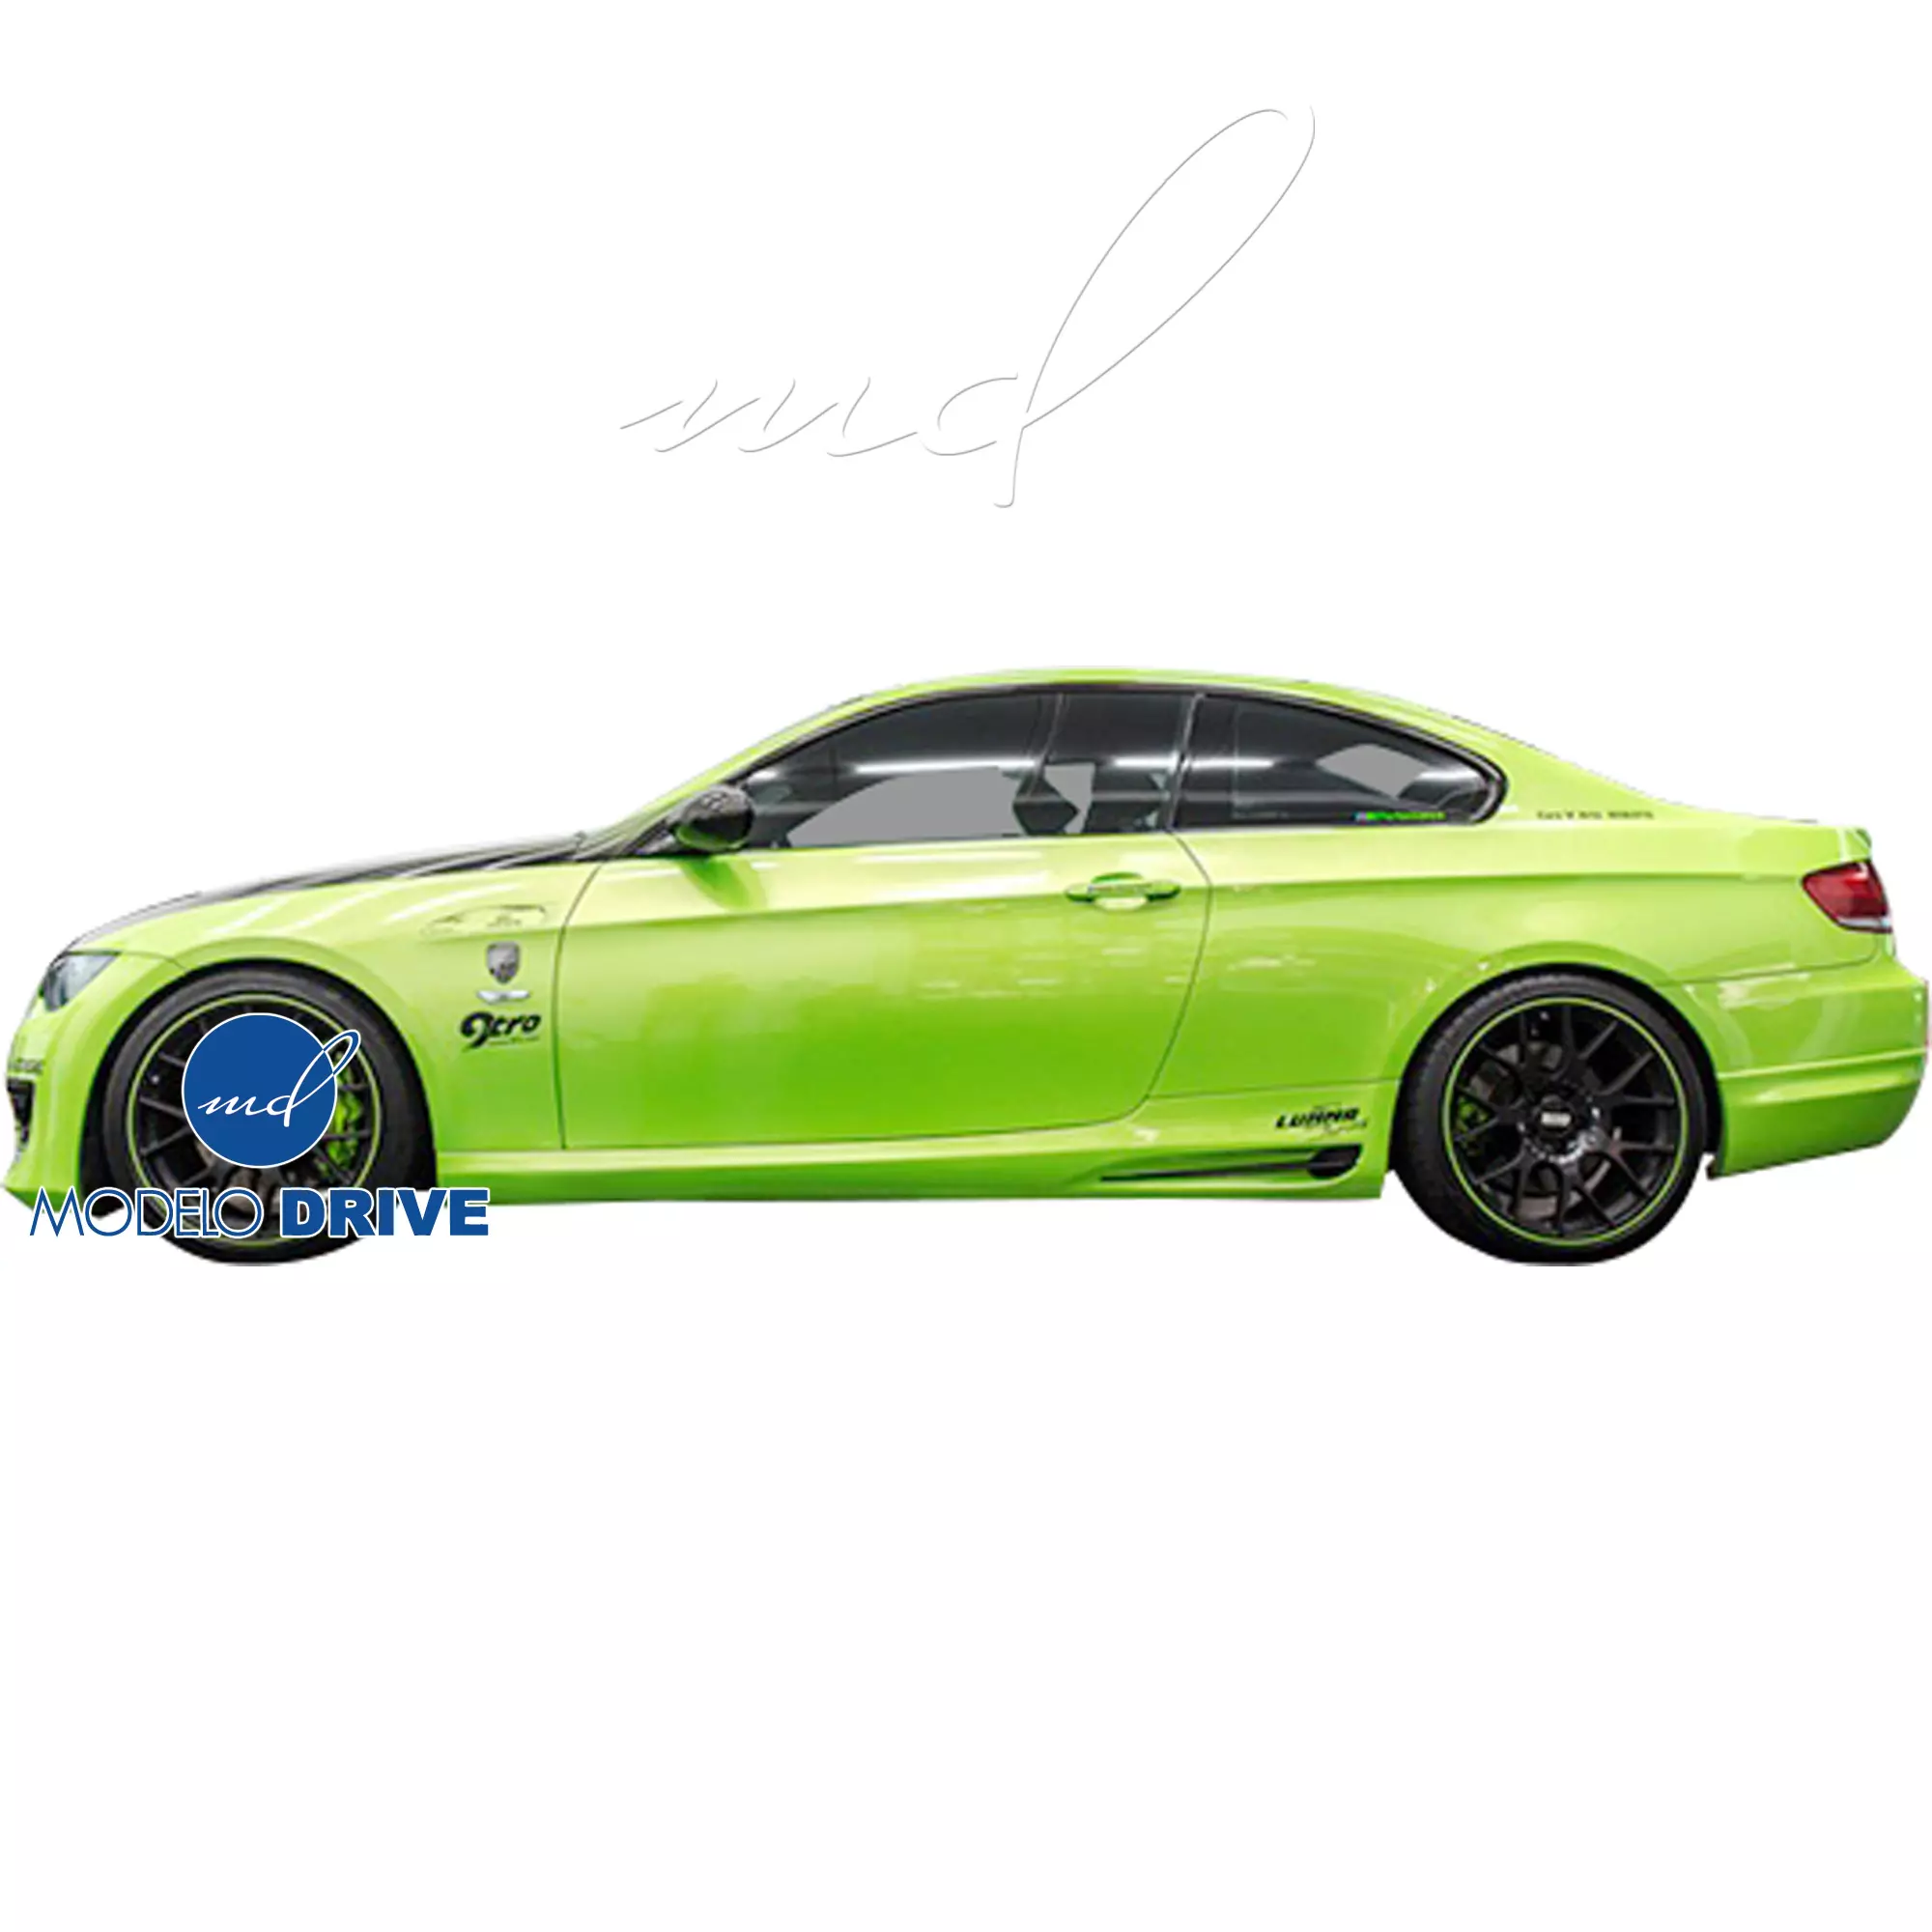 ModeloDrive FRP 1M-Style Body Kit 4pc > BMW 3-Series E92 2007-2010 > 2dr - Image 19